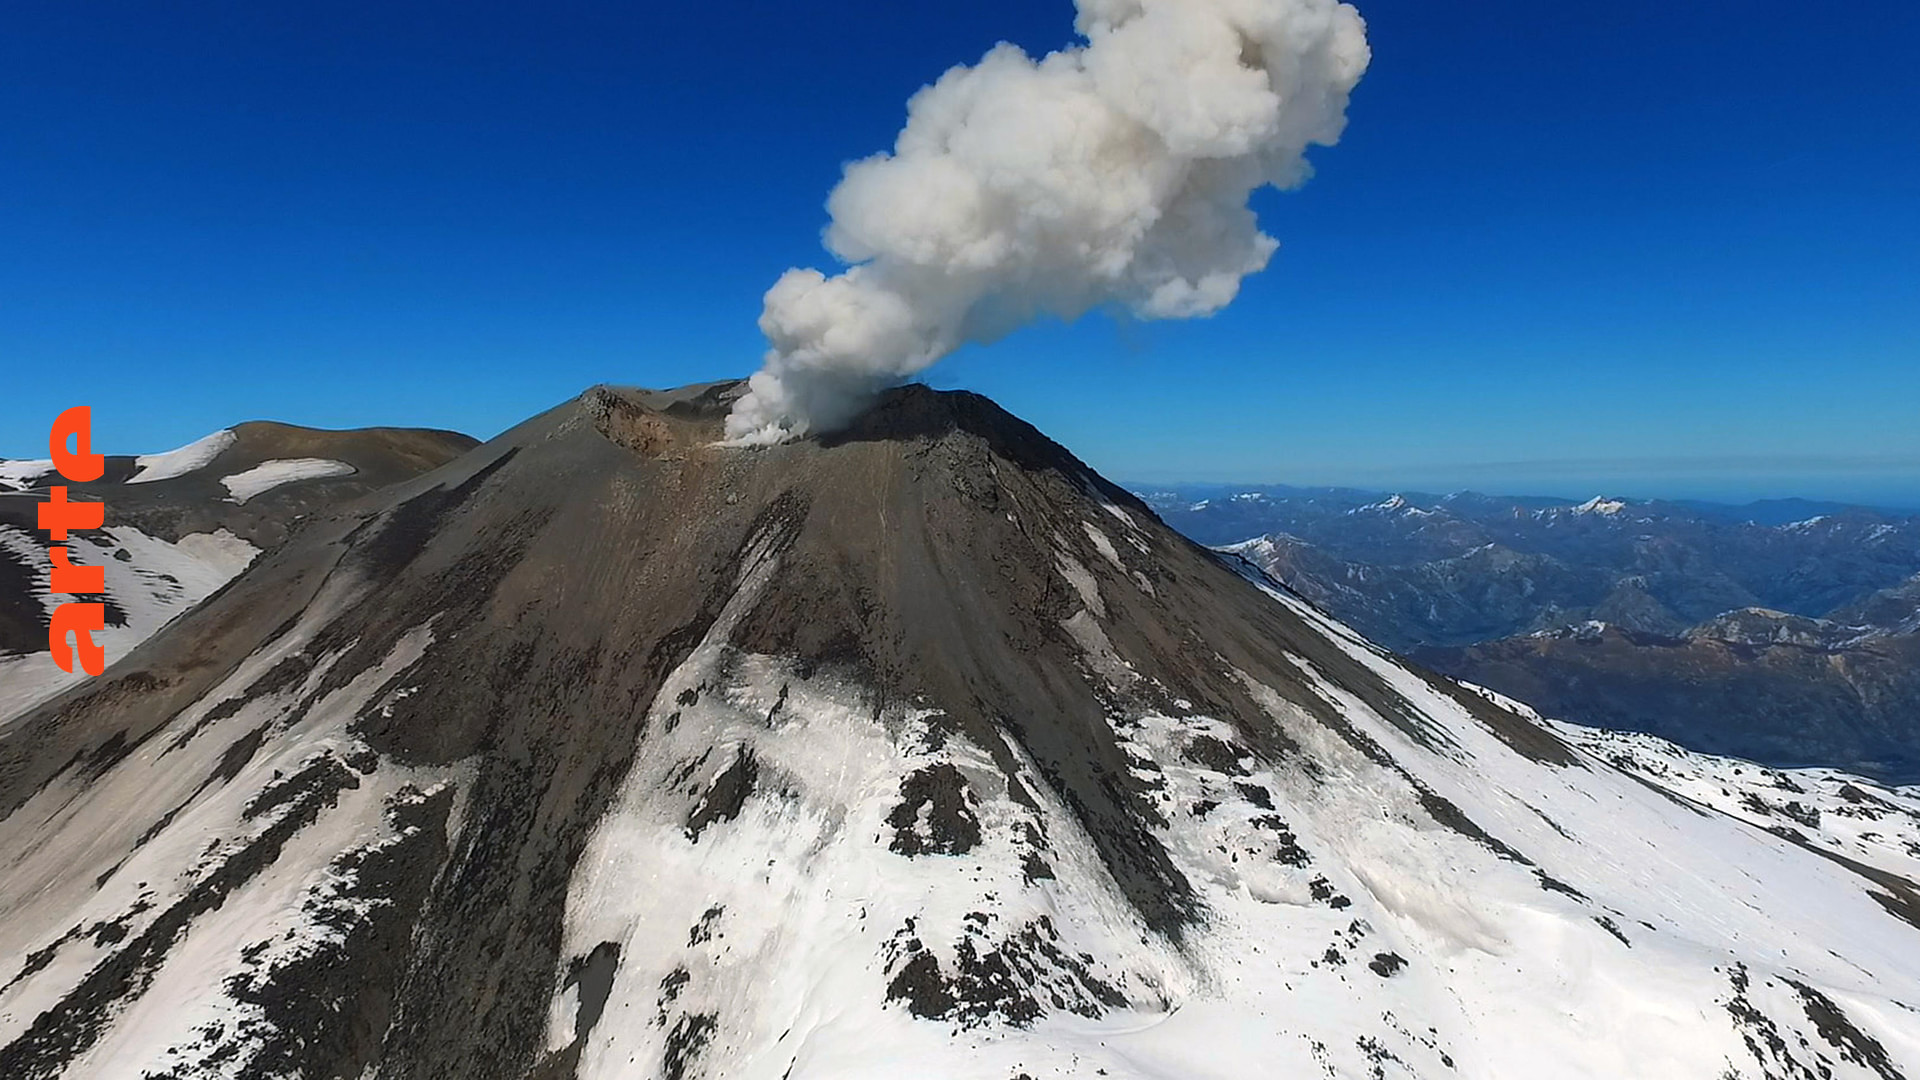 Nevados des Chillàn: Wintersport auf dem Vulkan